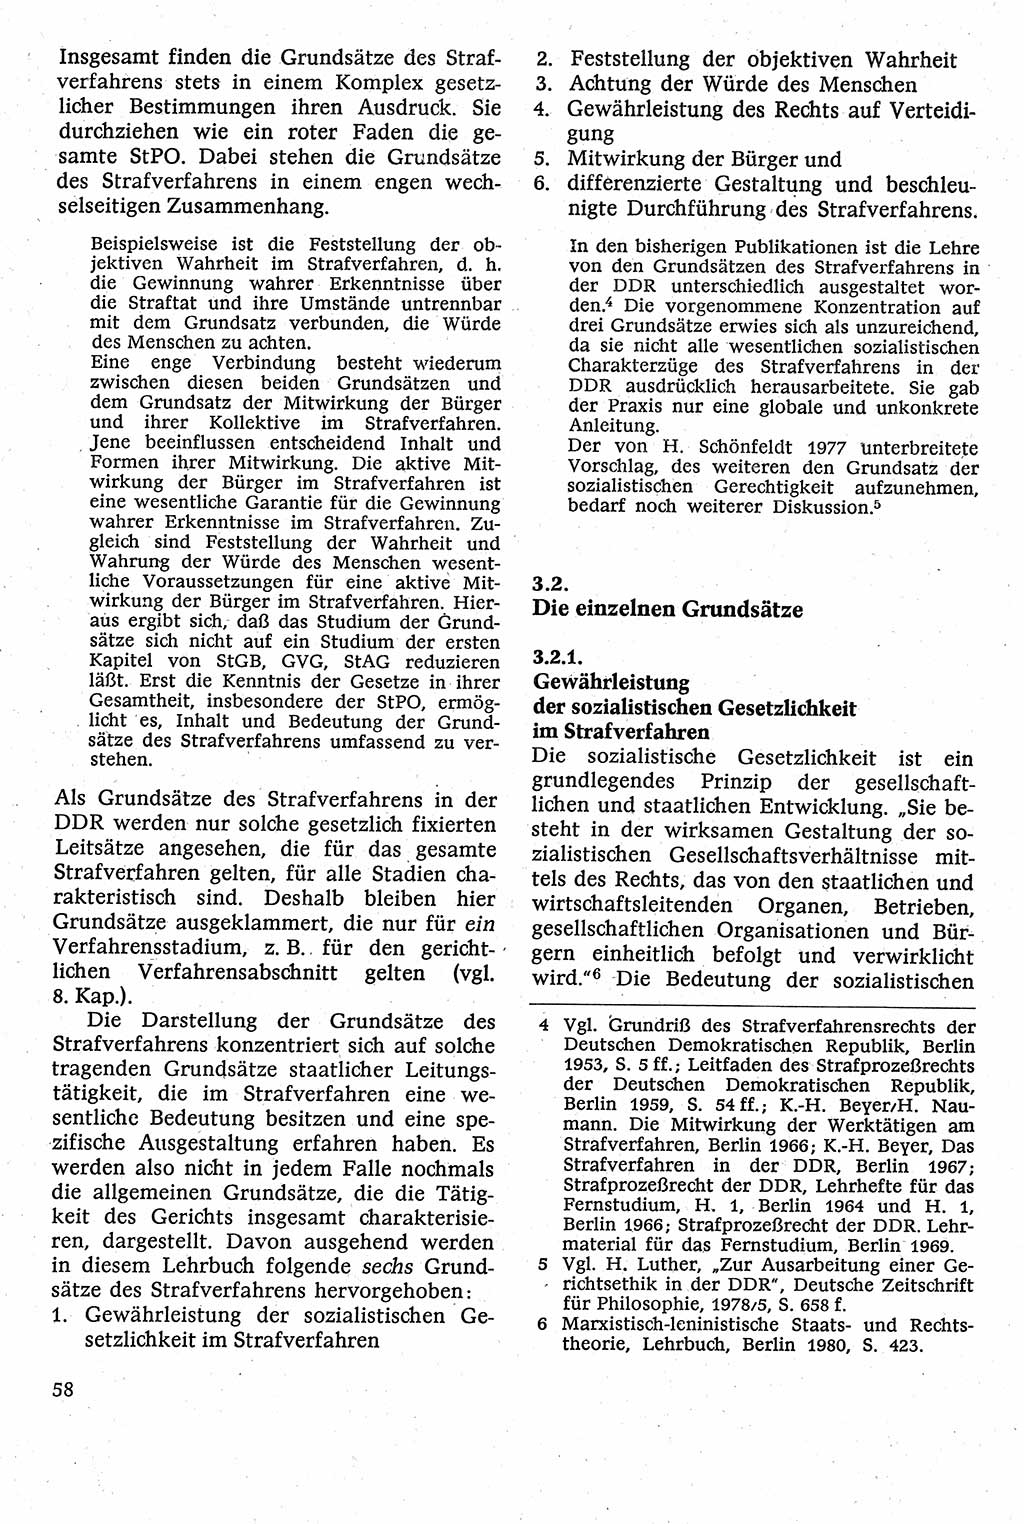 Strafverfahrensrecht [Deutsche Demokratische Republik (DDR)], Lehrbuch 1982, Seite 58 (Strafverf.-R. DDR Lb. 1982, S. 58)